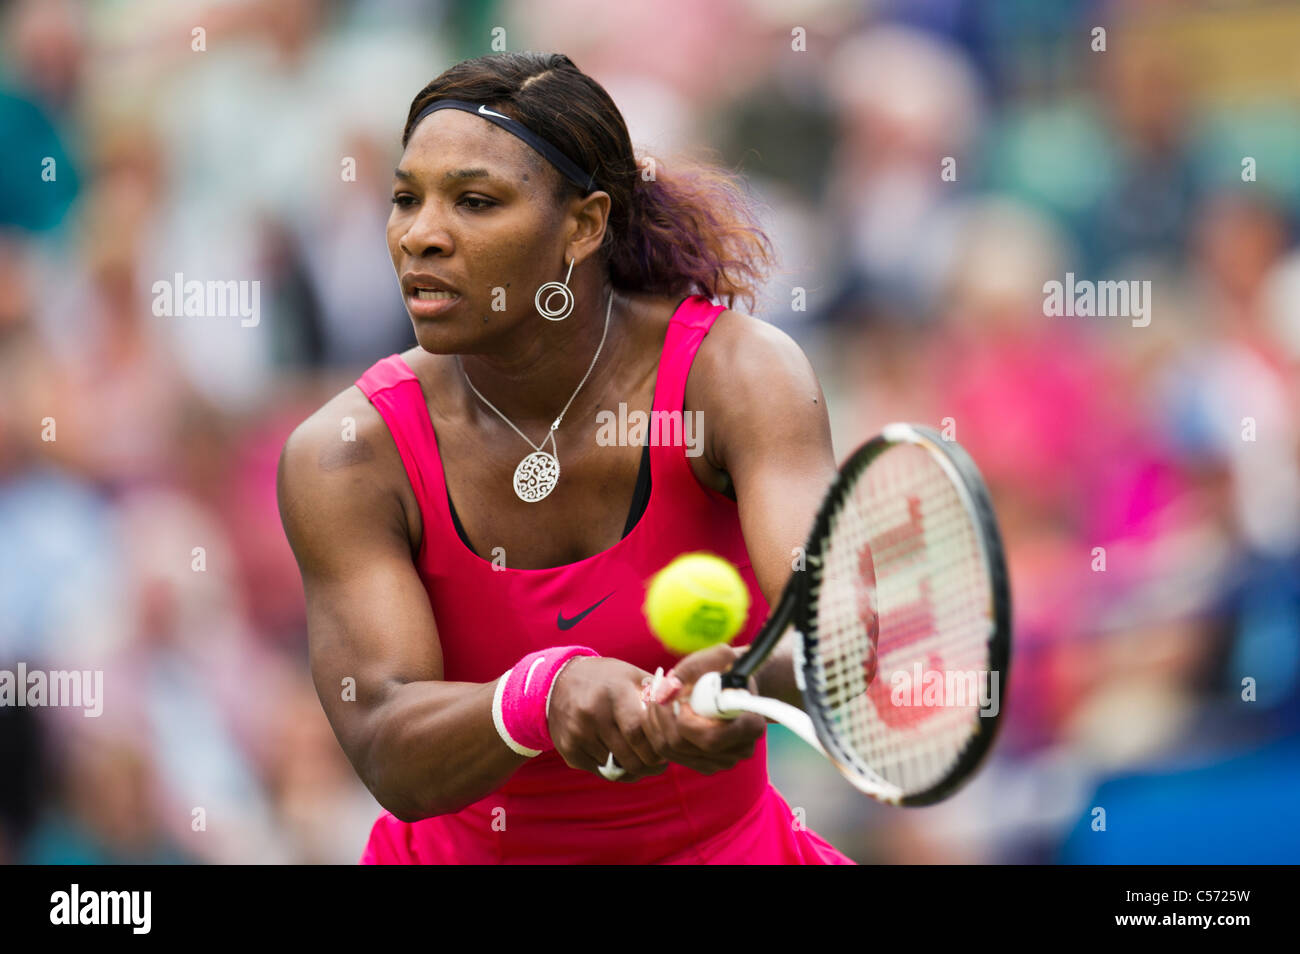 Aegon torneo internazionale di tennis, Eastbourne 2011, East Sussex. Serena Williams DI STATI UNITI D'AMERICA. Foto Stock